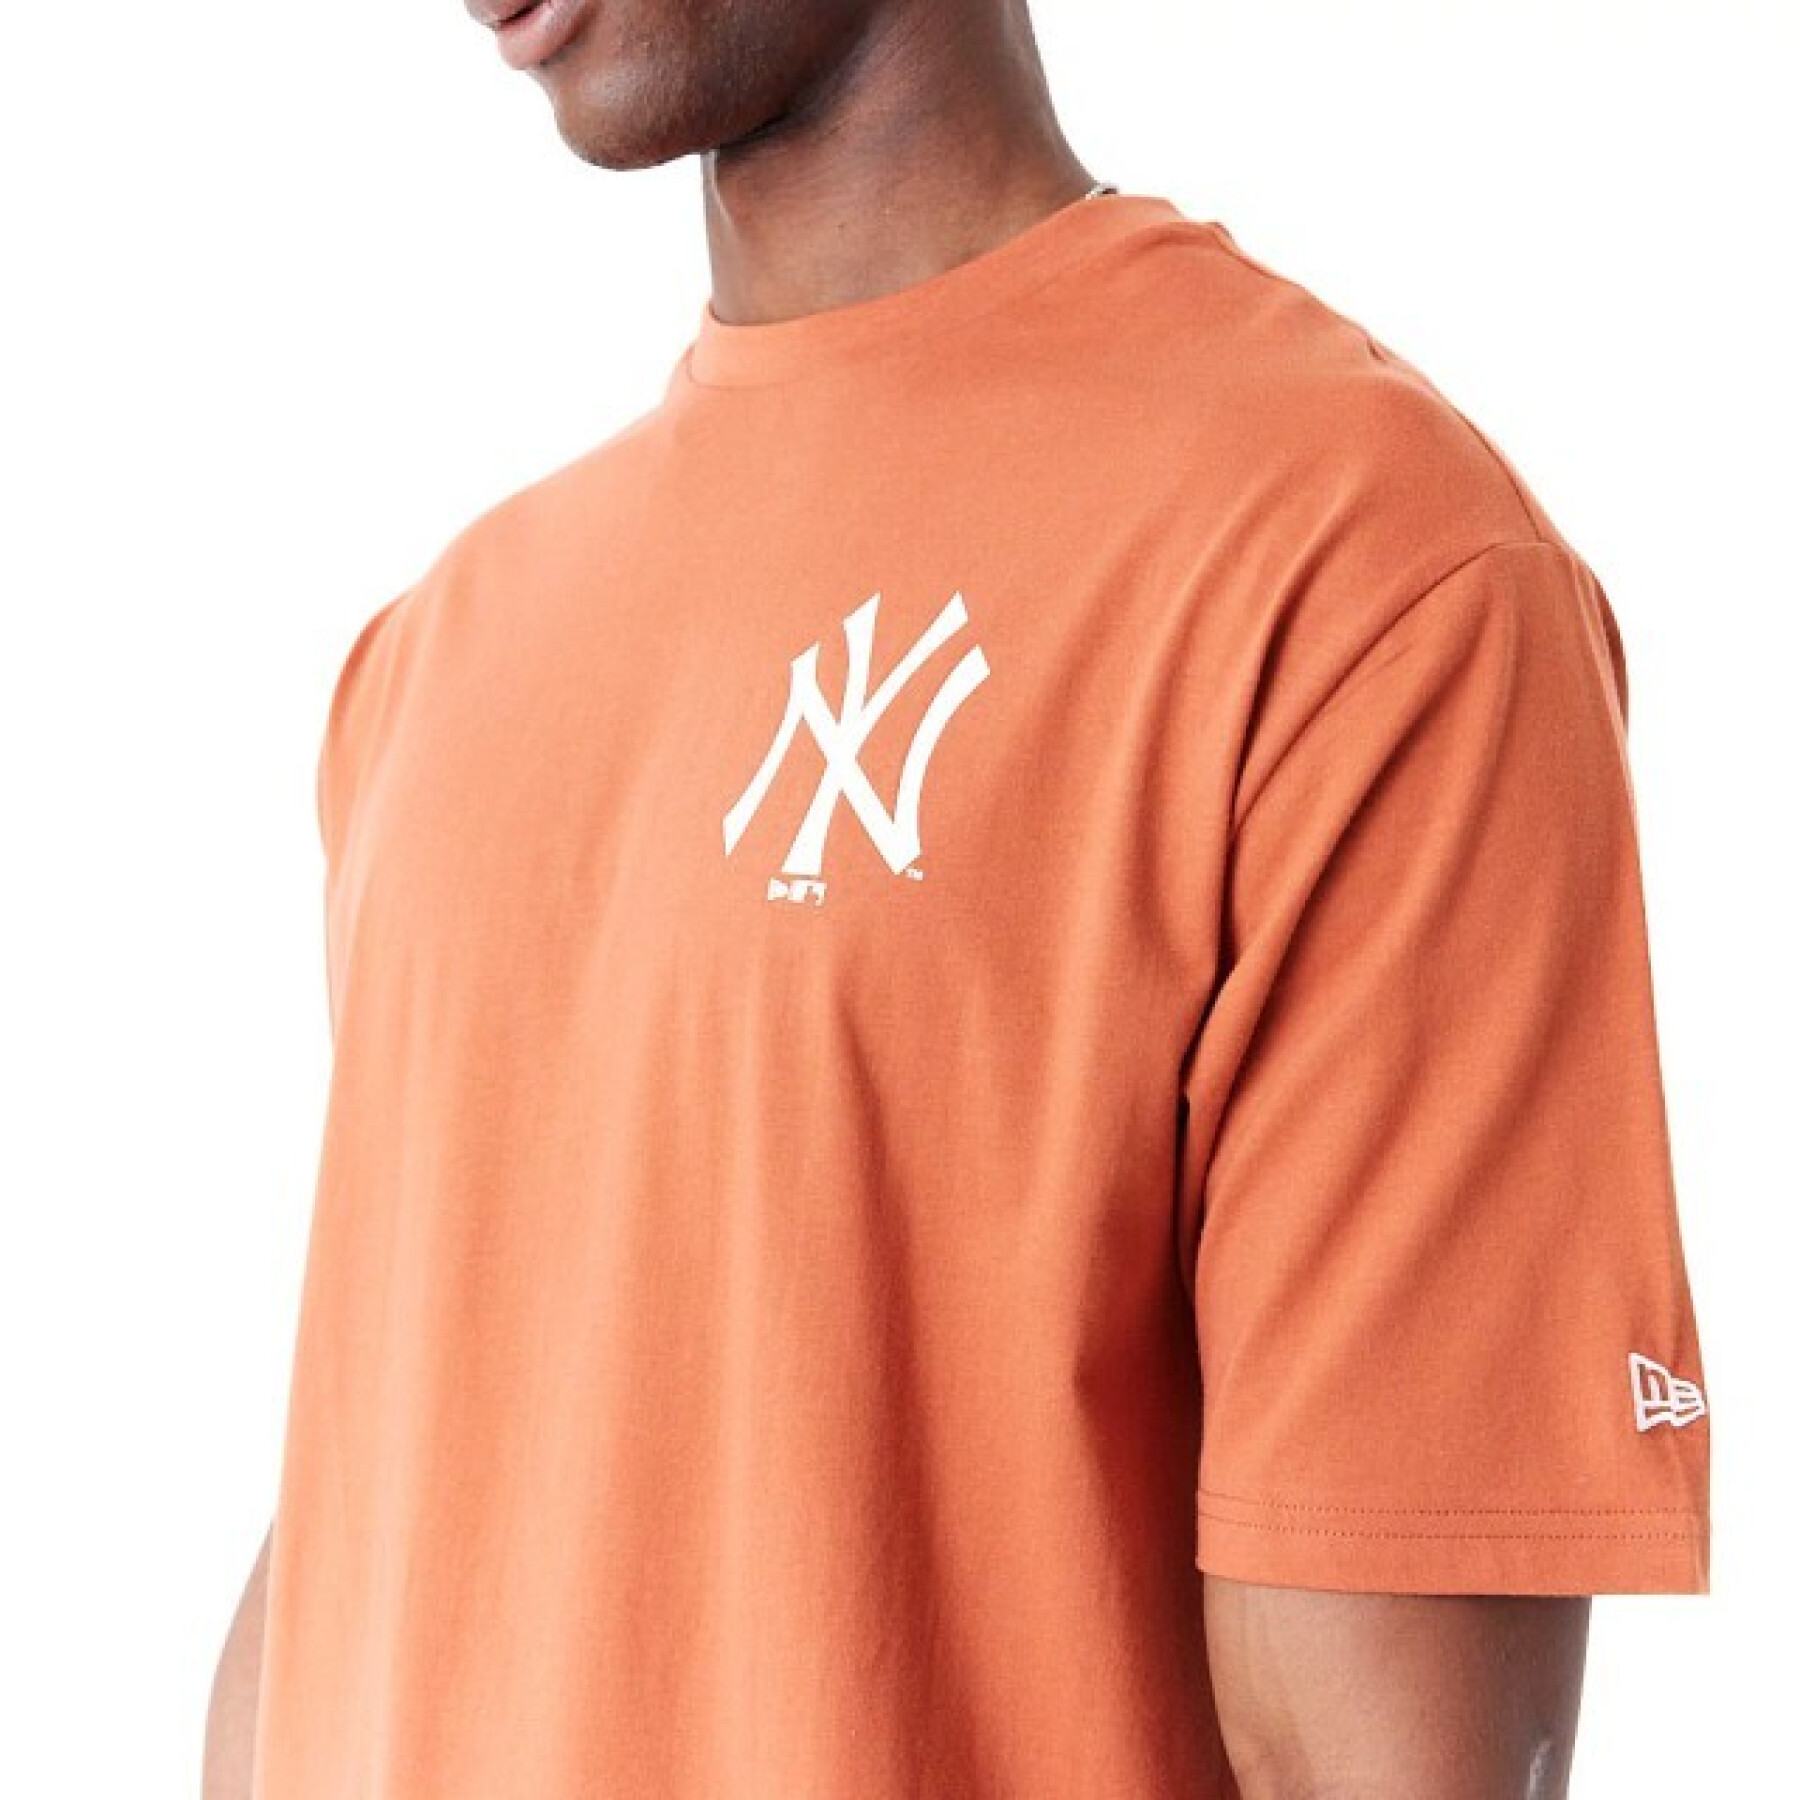 T-shirt New York Yankees MLB World Series